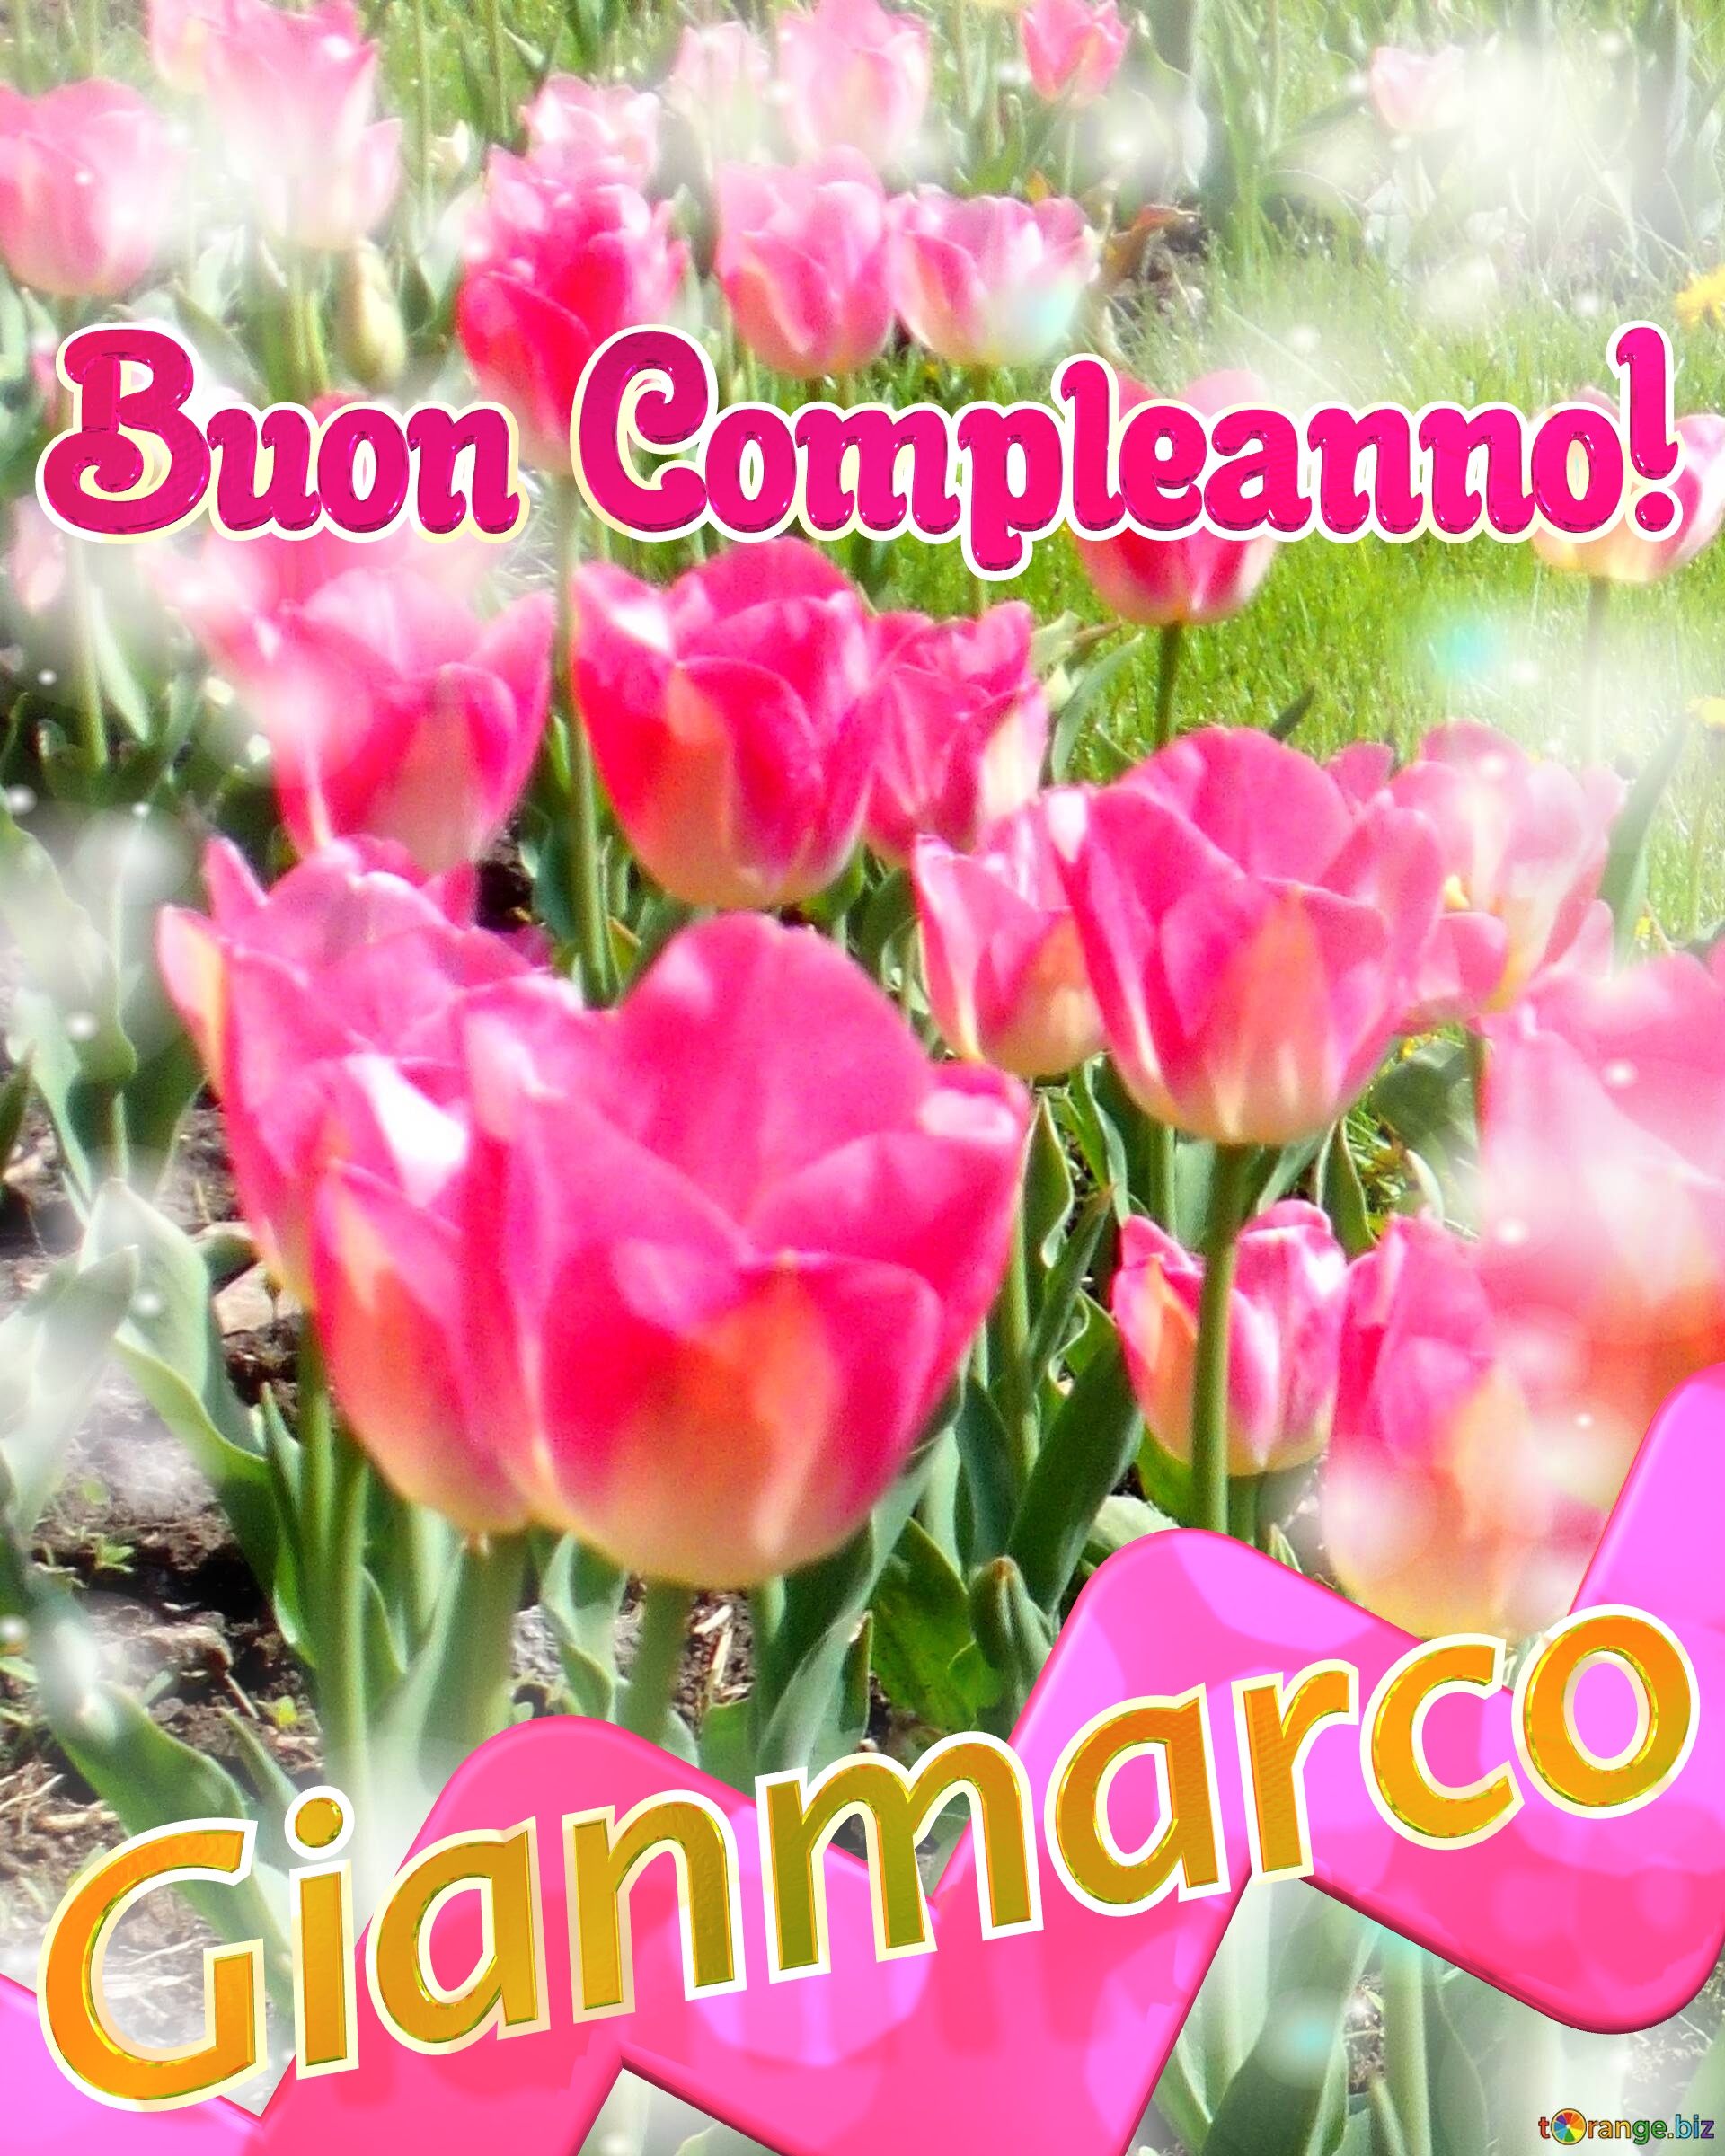 Buon Compleanno! Gianmarco   Buona primavera, che questi tulipani ti portino la freschezza e la vitalità della stagione. №0